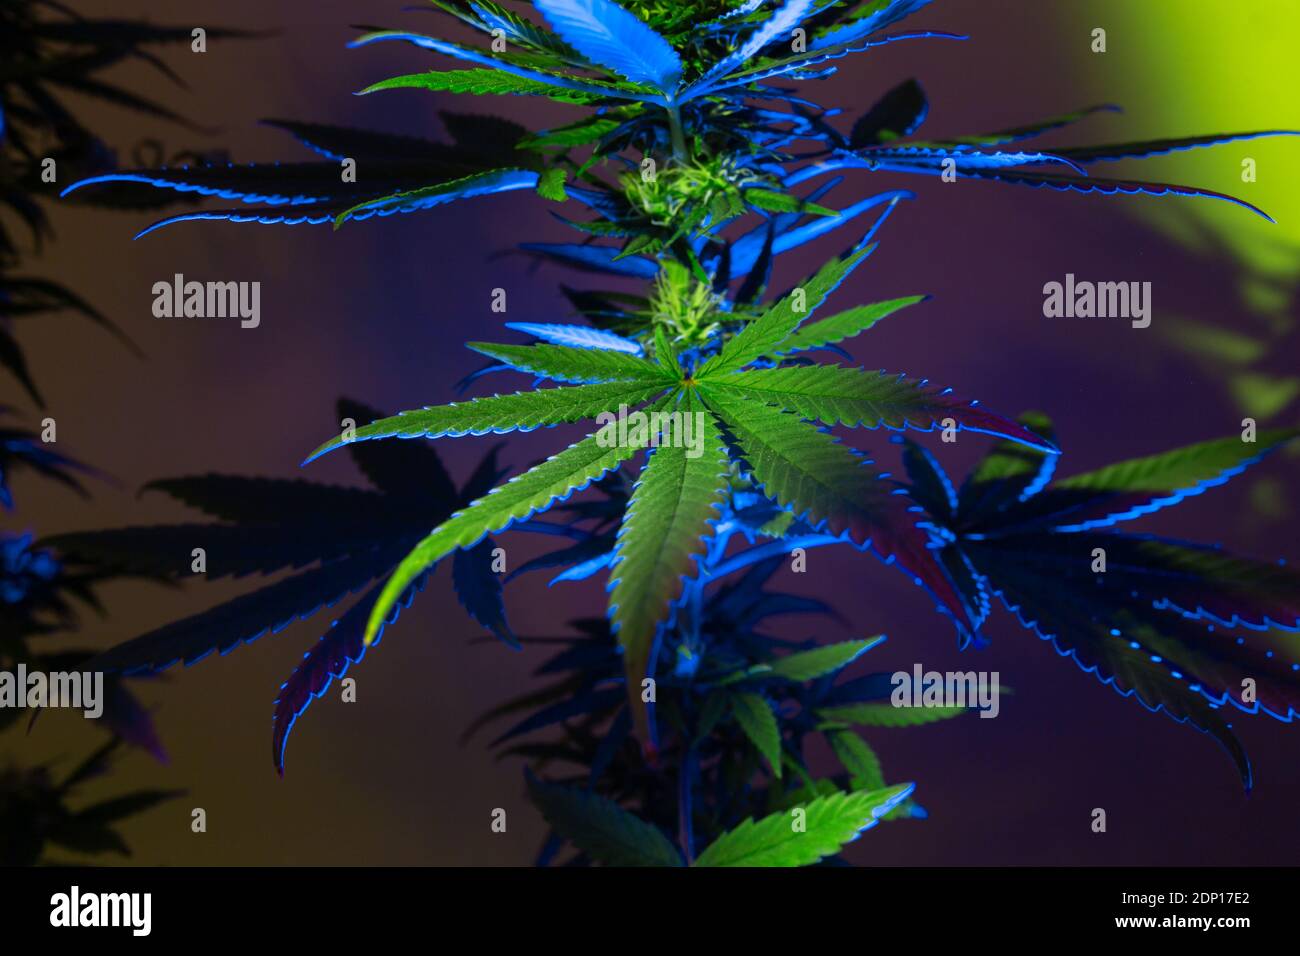 Cannabis Laub Hintergrund. Hanf grün große Blätter mit künstlerischen bunten Effekt. Künstlerisches neues Aussehen von medizinischem Marihuana. Stockfoto